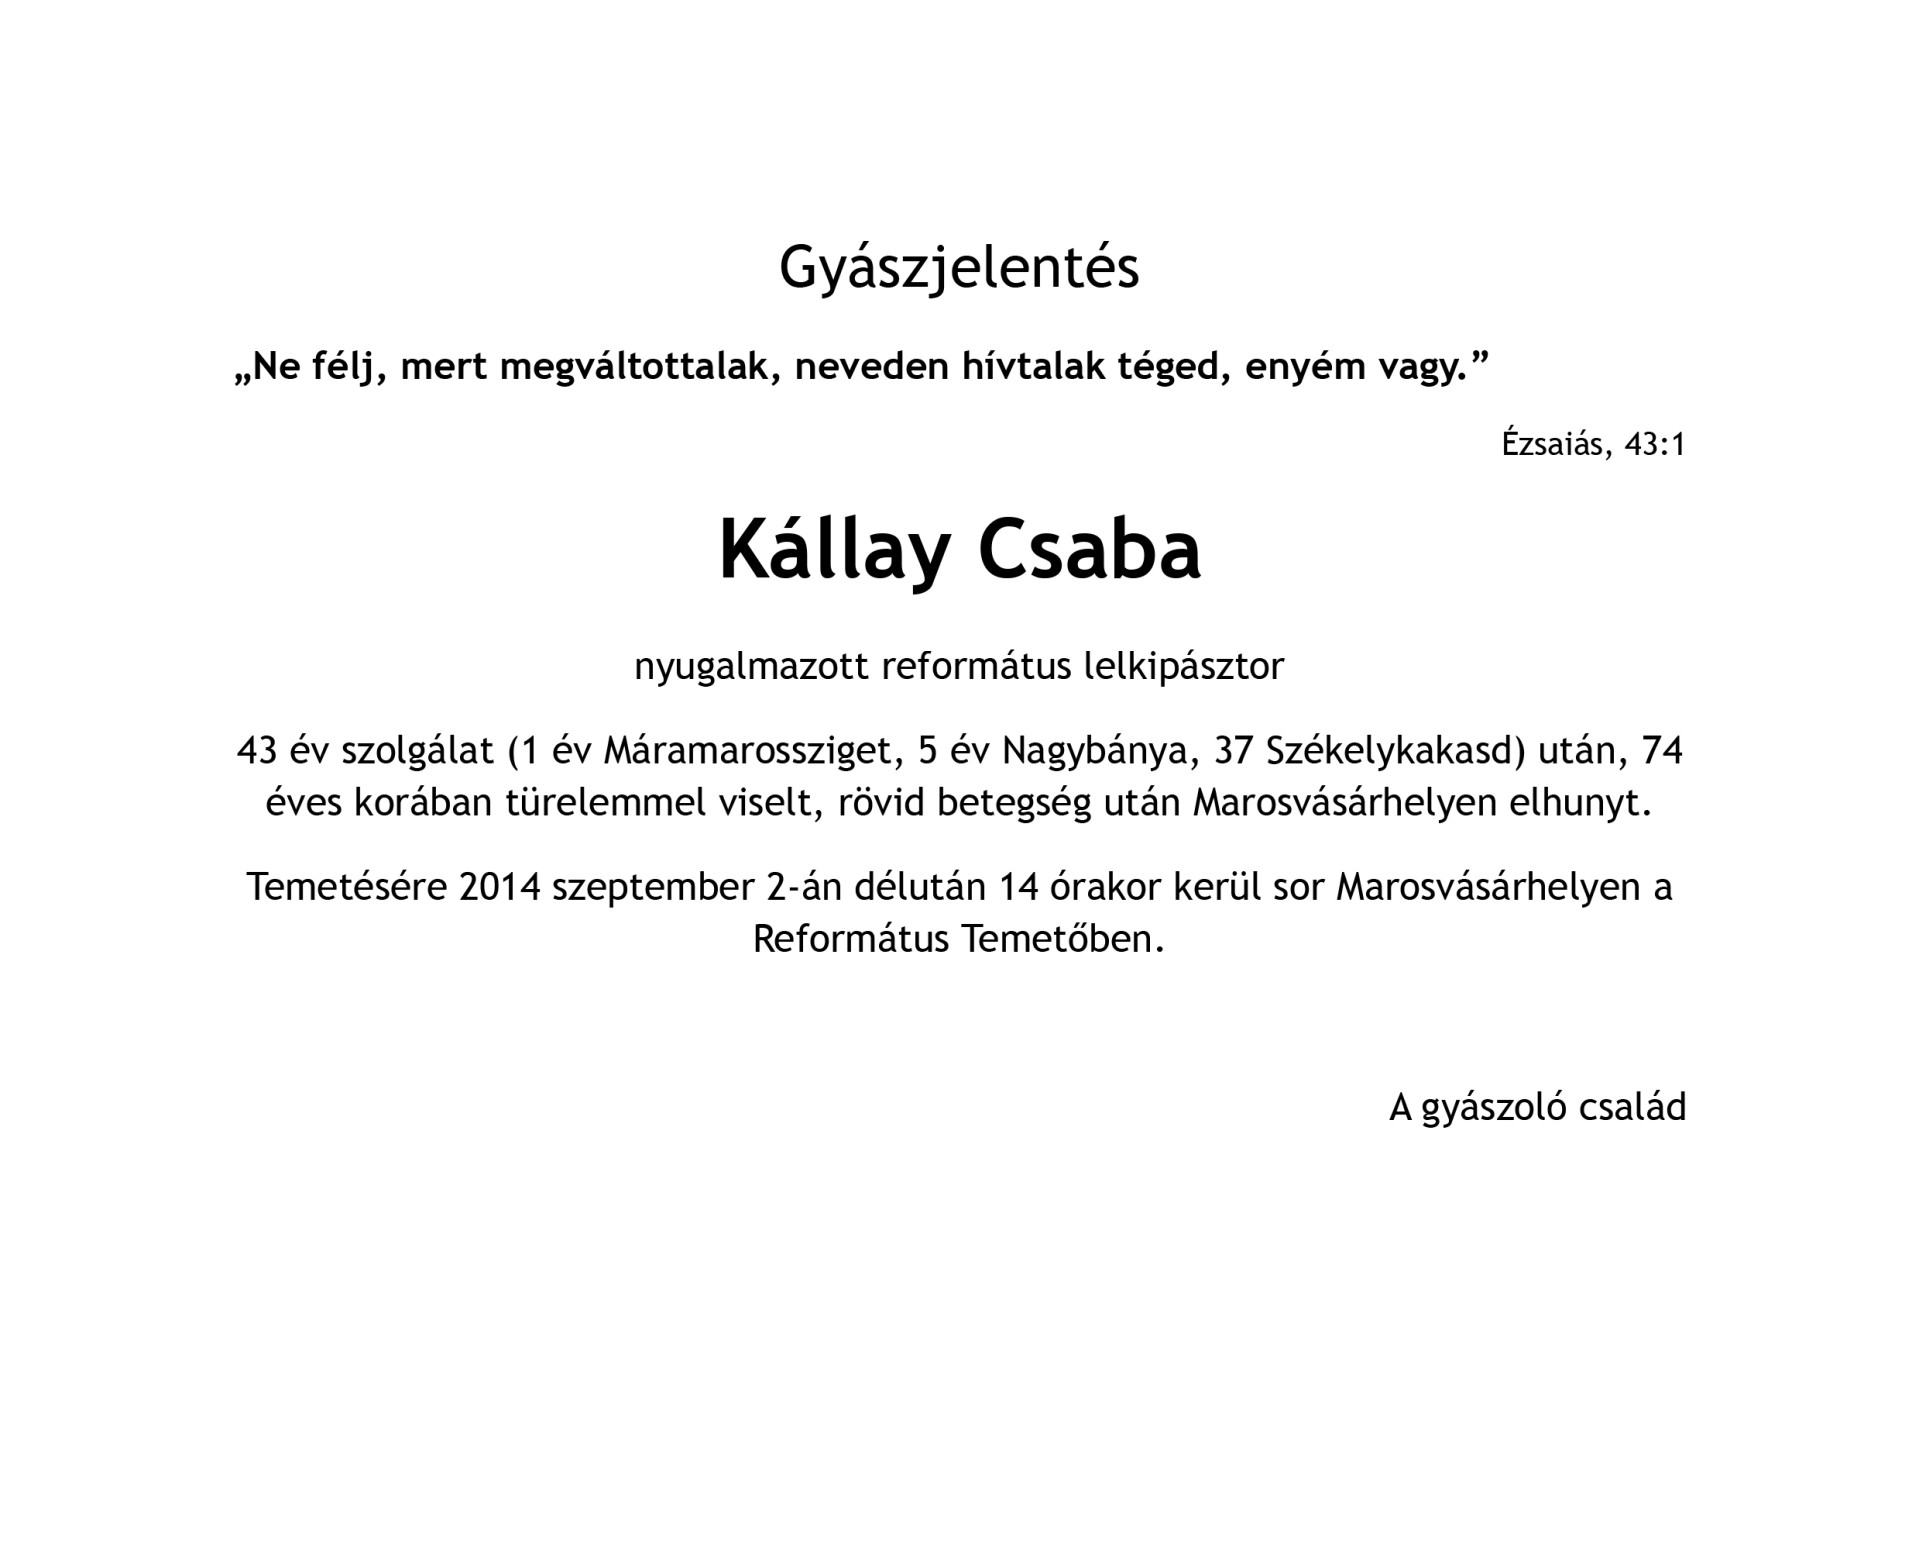 Gyászjelentés - Kállay Csaba nyugalmazott lelkipásztor